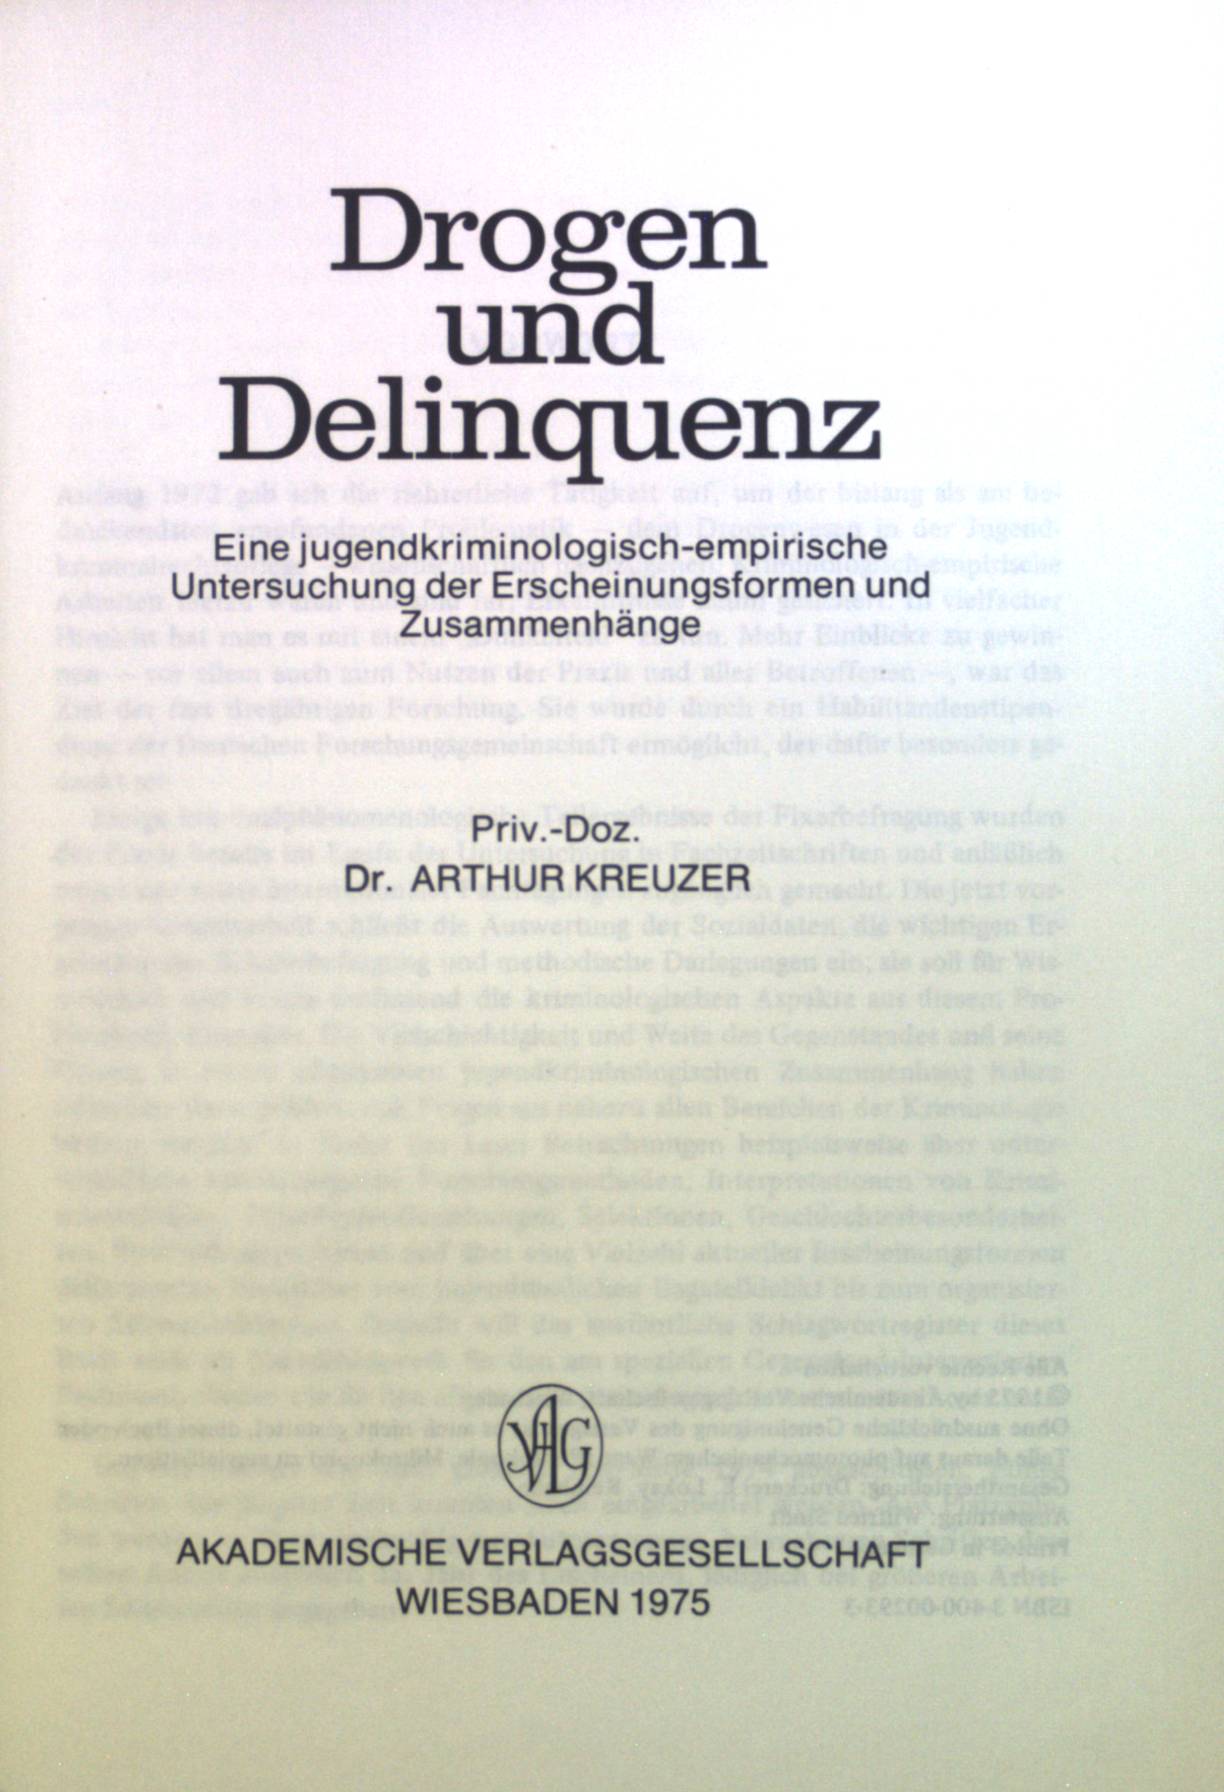 Drogen und Delinquenz : eine jugendkriminologisch-empirische Untersuchung der Erscheinungsformen und Zusammenhänge. - Kreuzer, Arthur